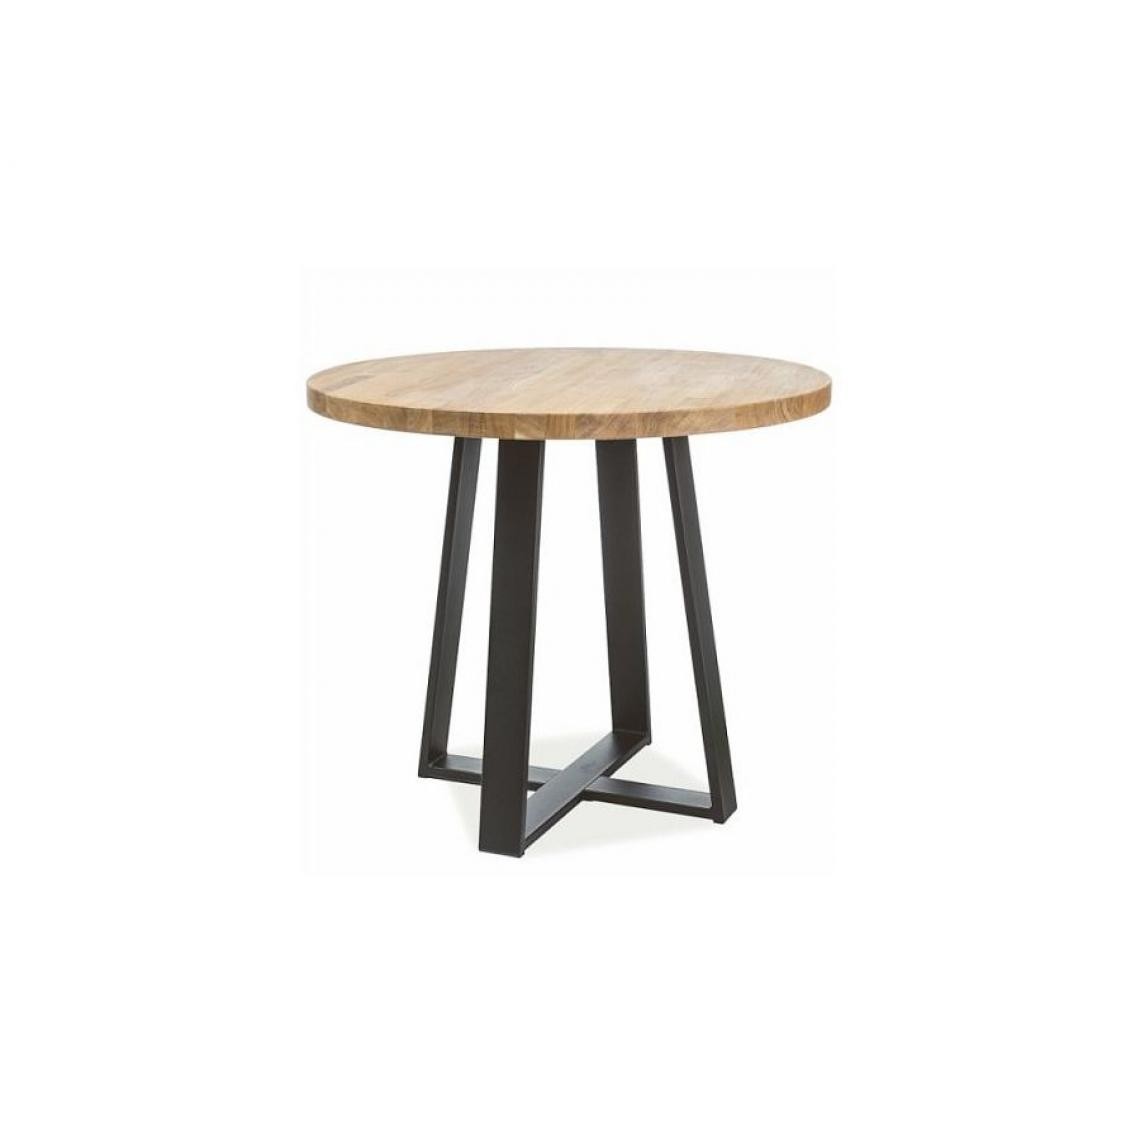 Hucoco - GIANNA - Table de salle à manger de style loft - Dimensions : 90x90x78 cm - Plateau rond en bois massif huilé - Base en métal - Chêne - Tables d'appoint